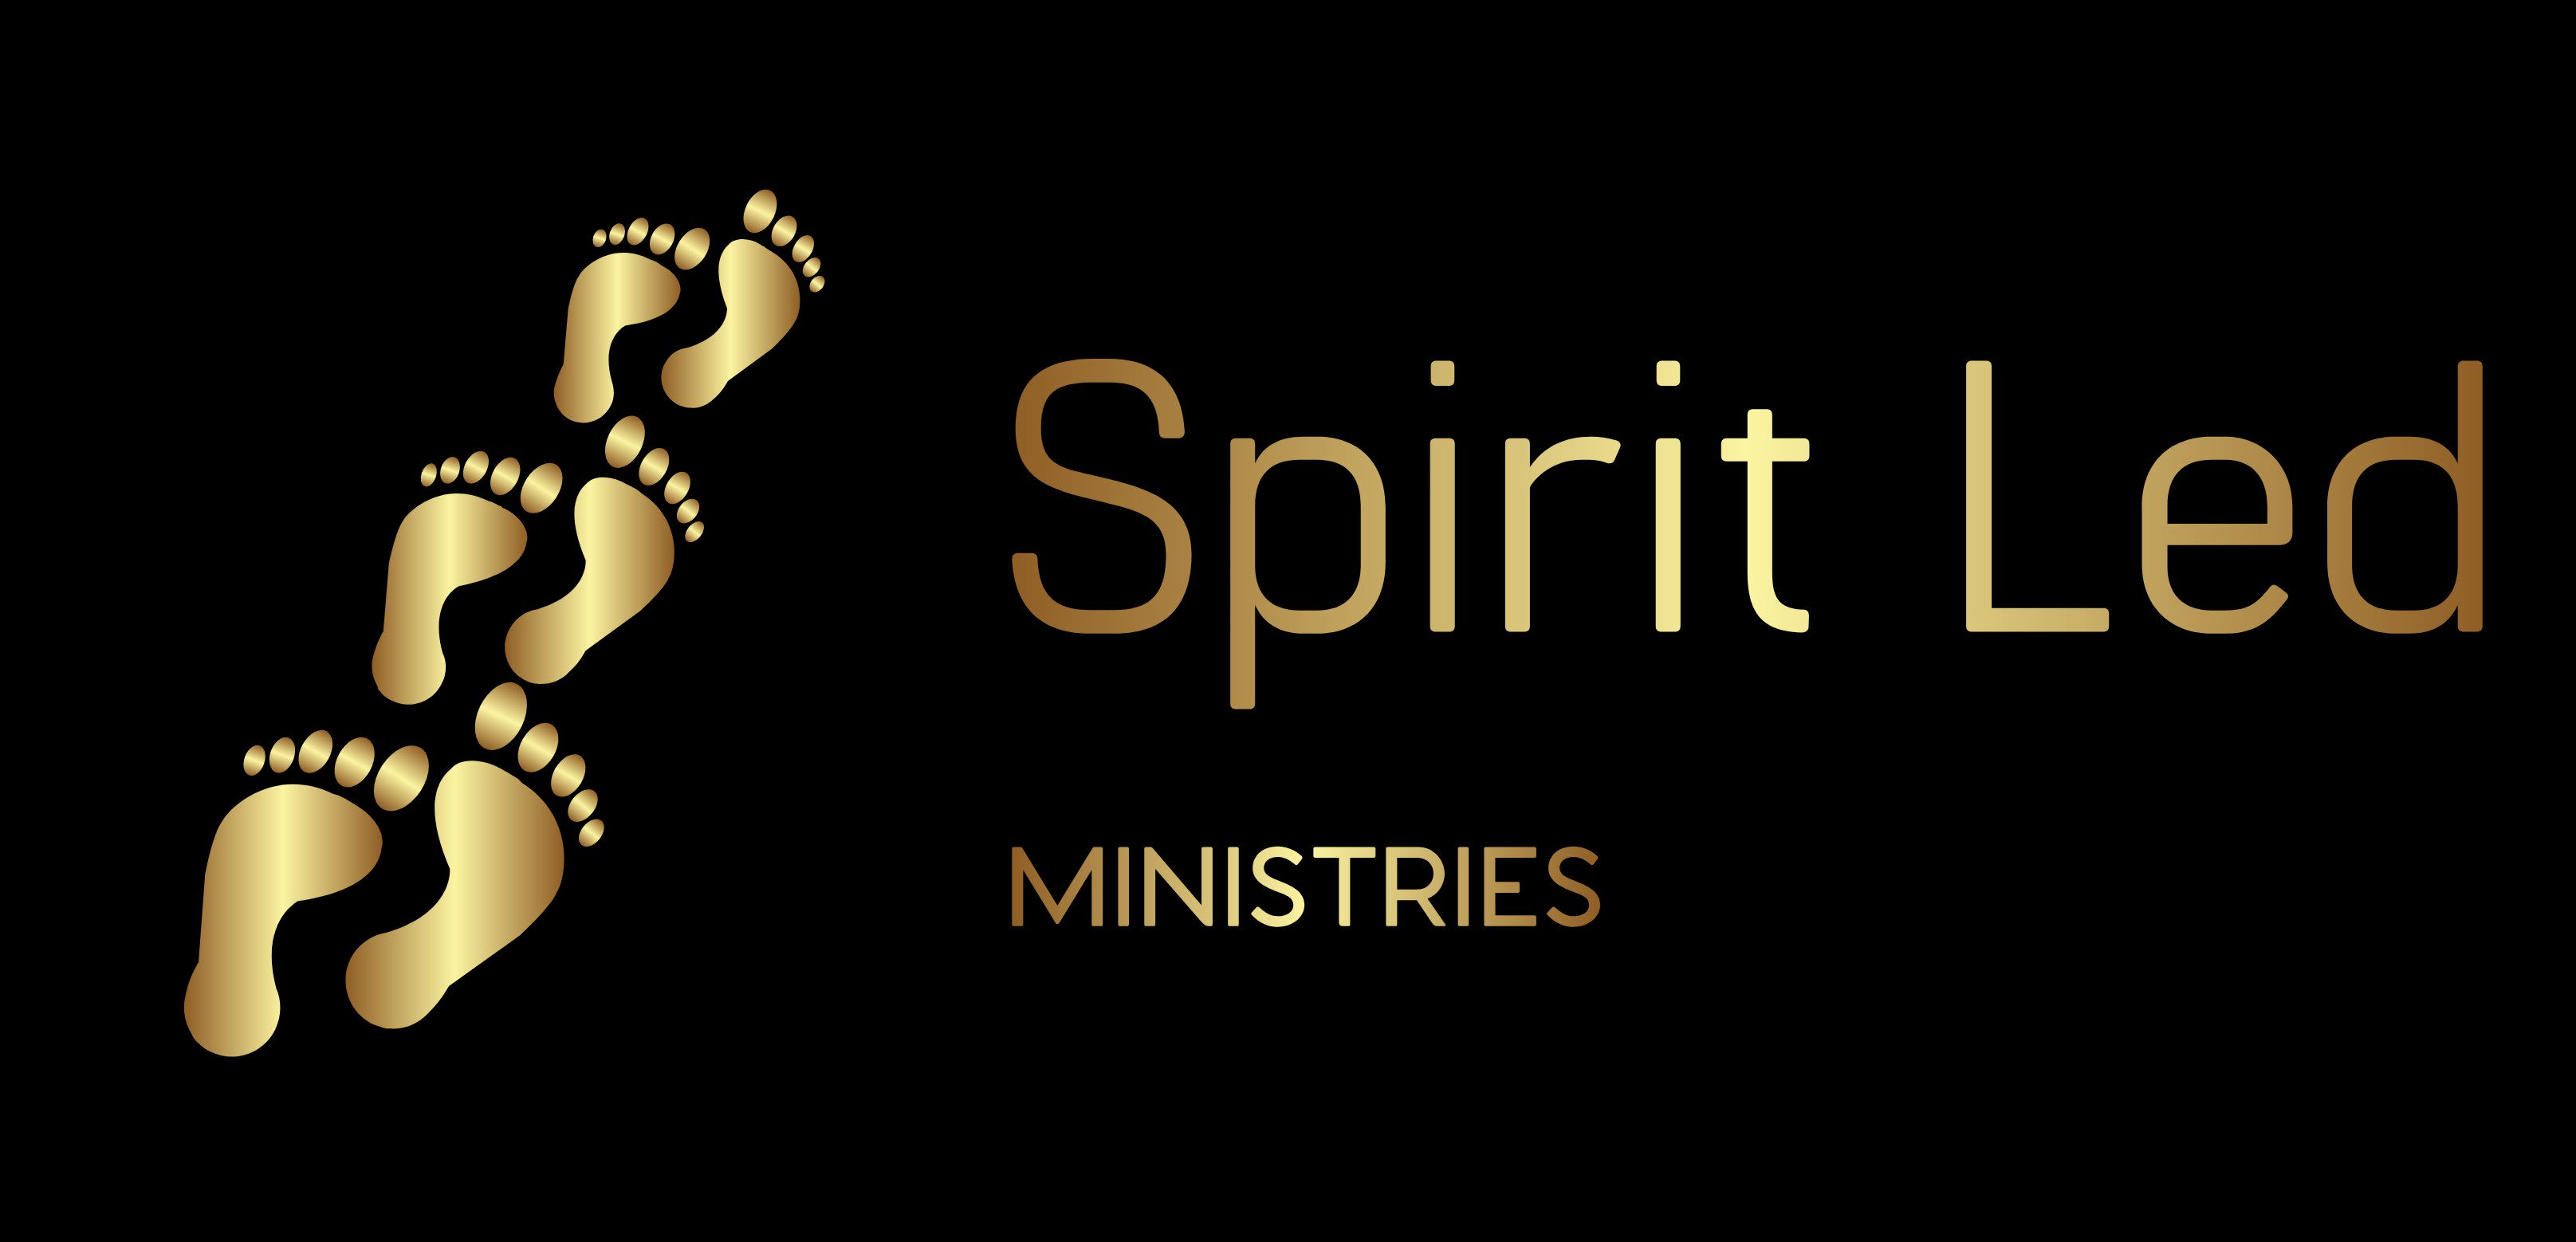 Spirit Led Ministries